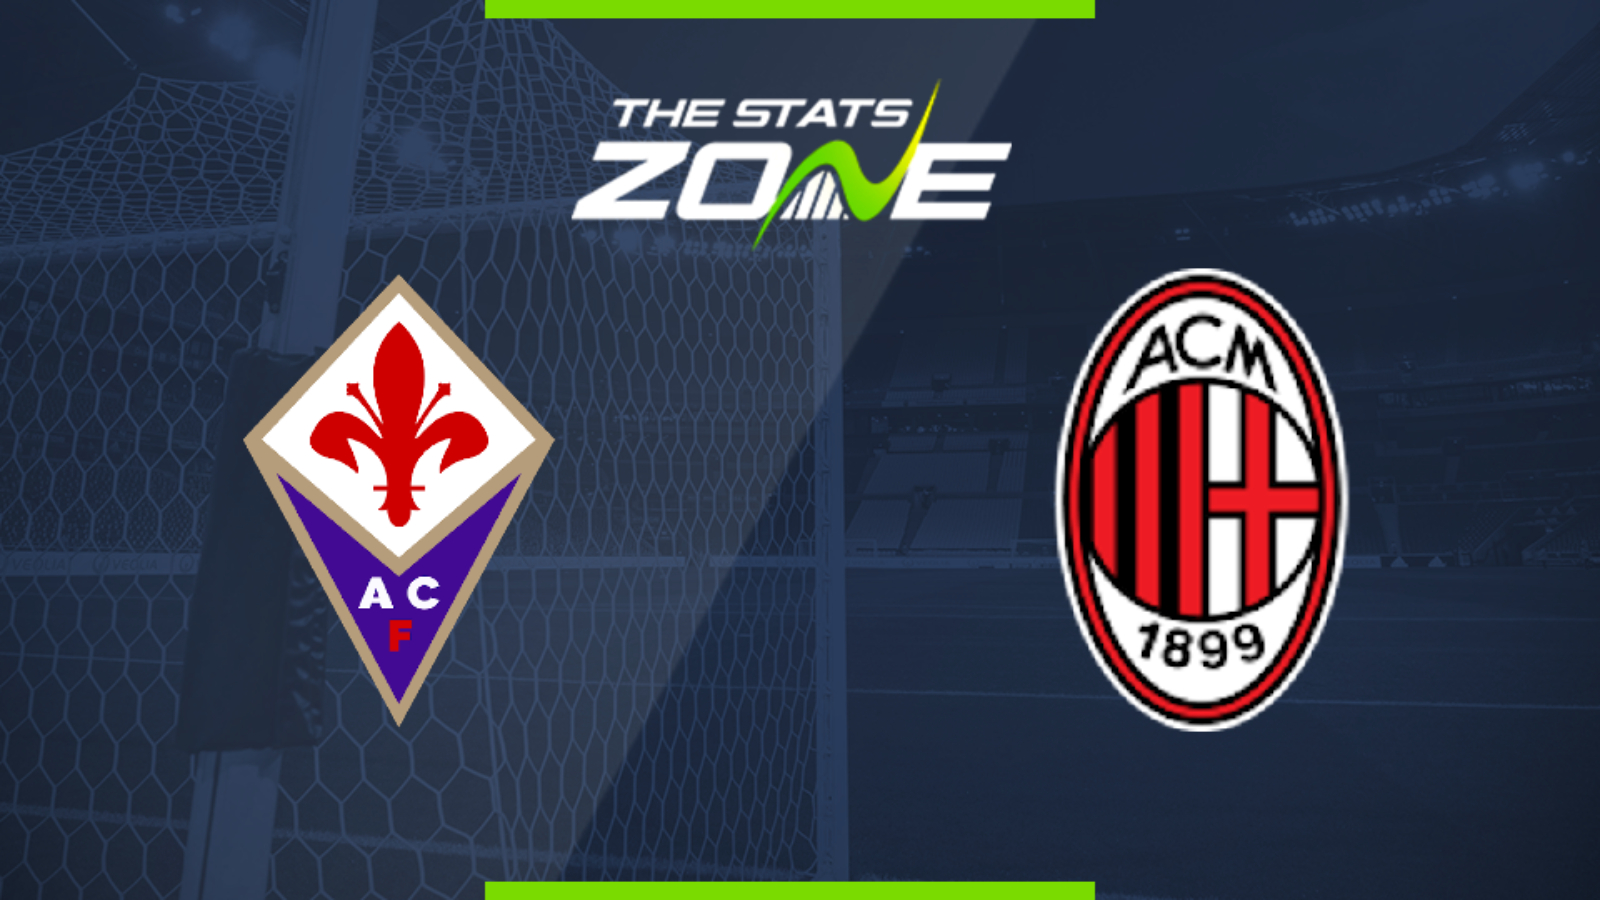 2019-20 Serie A – Fiorentina vs Milan & Prediction - The Stats Zone